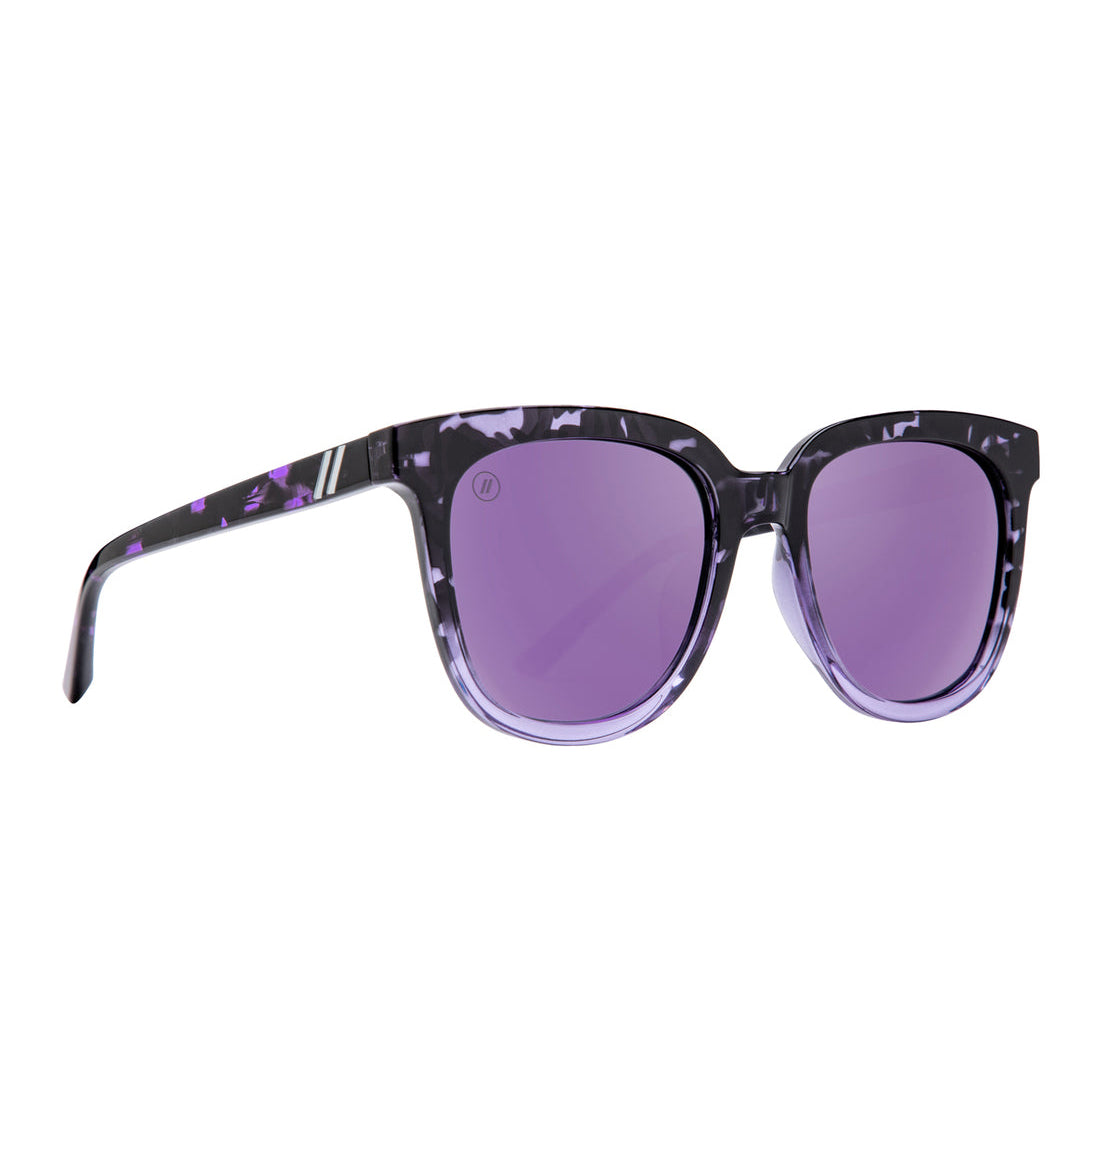 Blenders Grove Polarized Sunglasses RavenDelight BE4107Tortoise/Purple